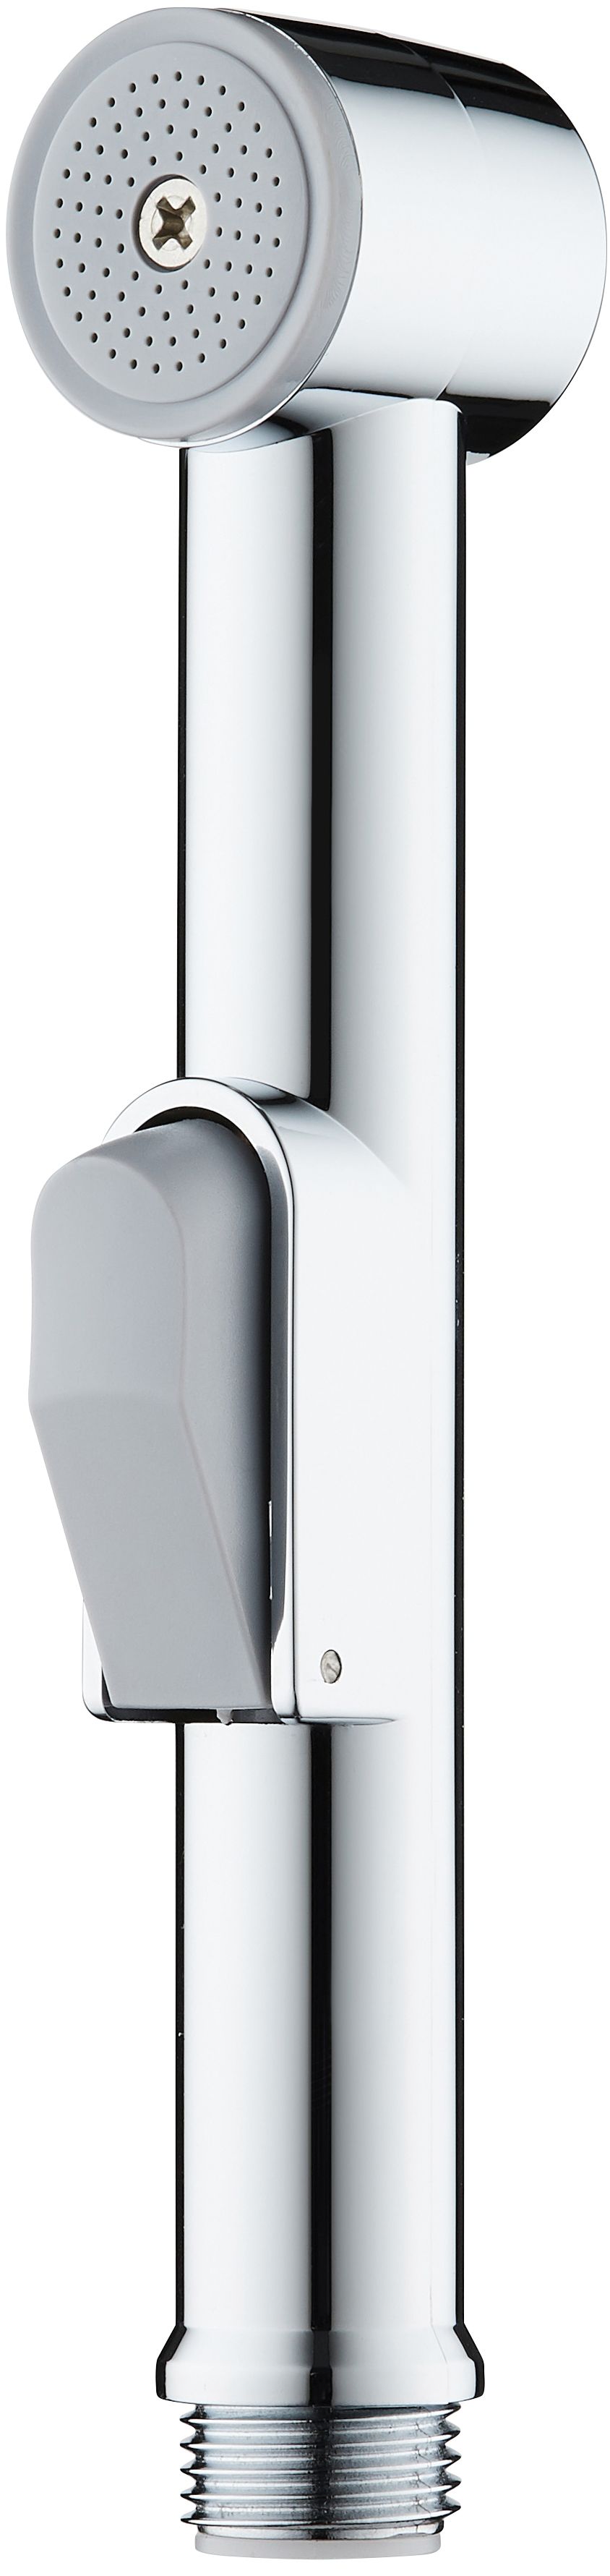 Hand shower - bidetta - XDCA6SCA1 - Główne zdjęcie produktowe